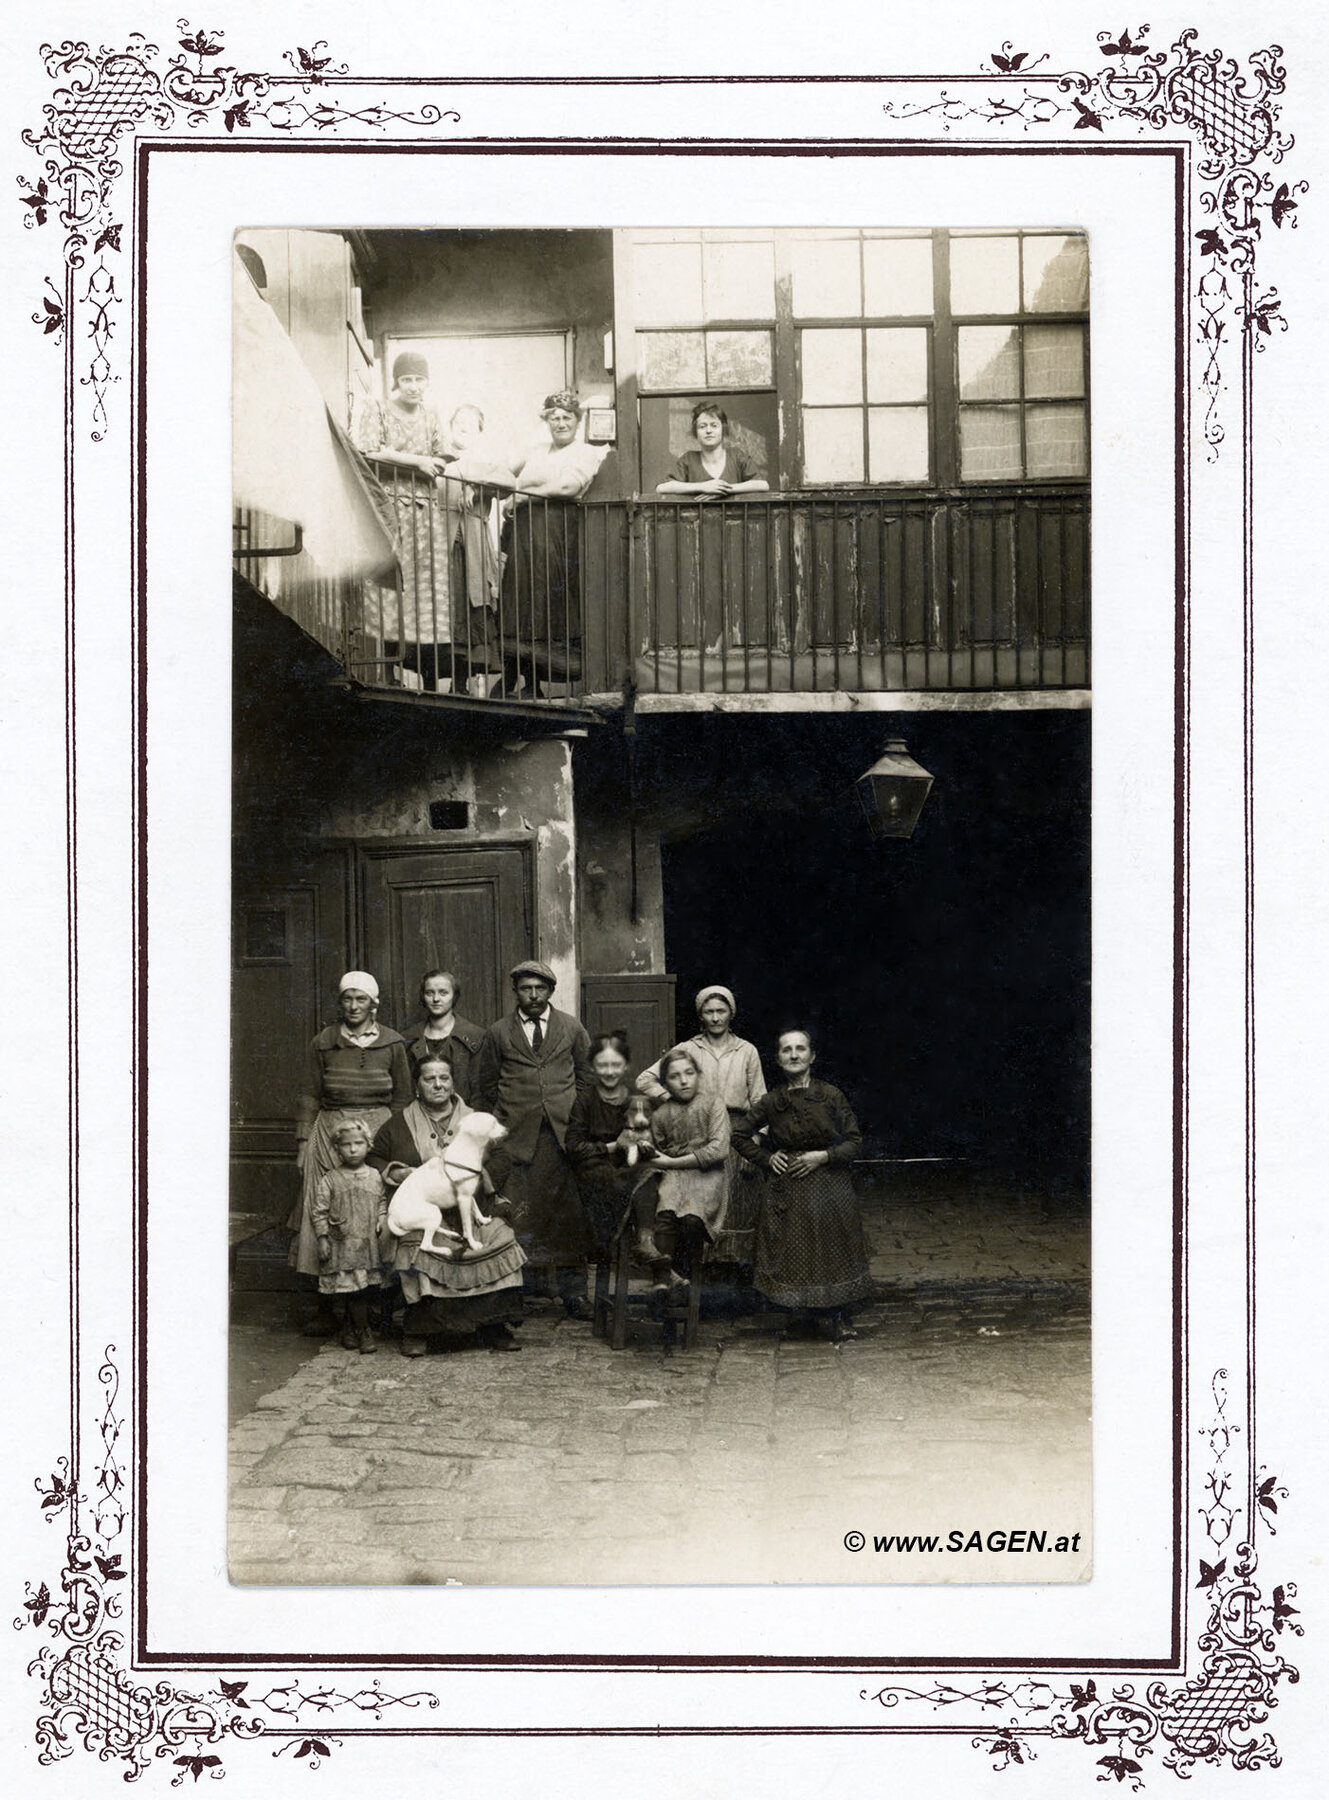 Wien, Bewohner im Hinterhof im Jahr 1910